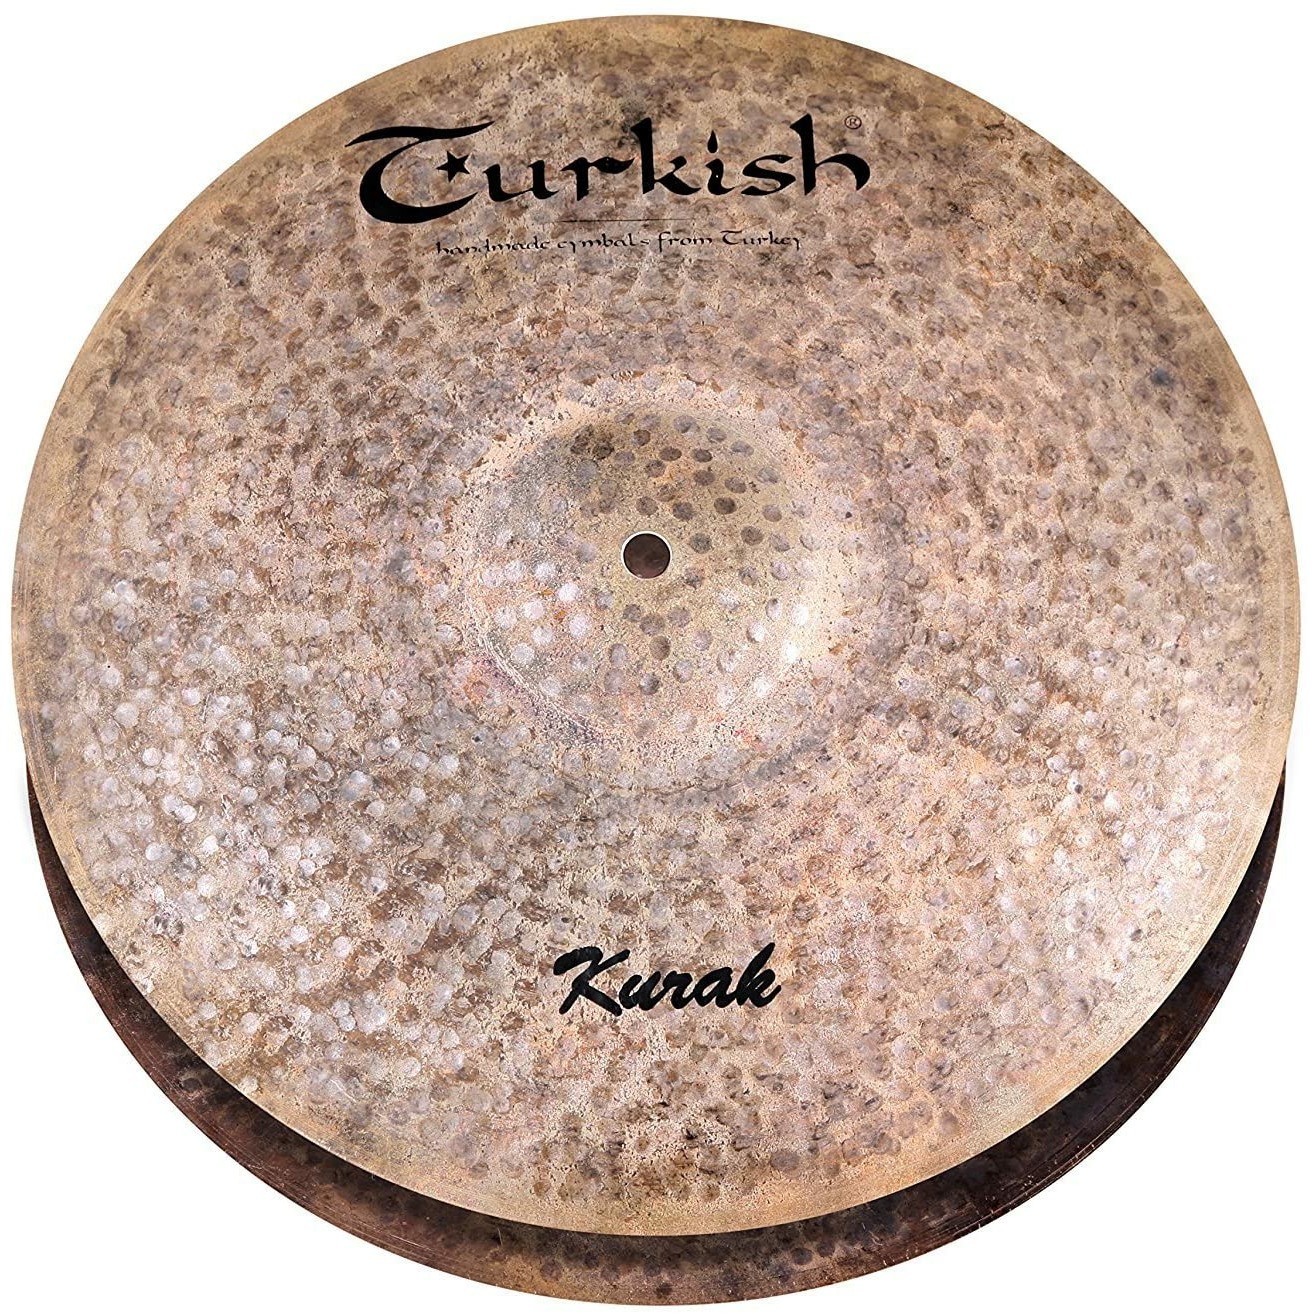 Тарелки, барабаны для ударных установок Turkish K-H13 тарелки барабаны для ударных установок turkish rbr c18